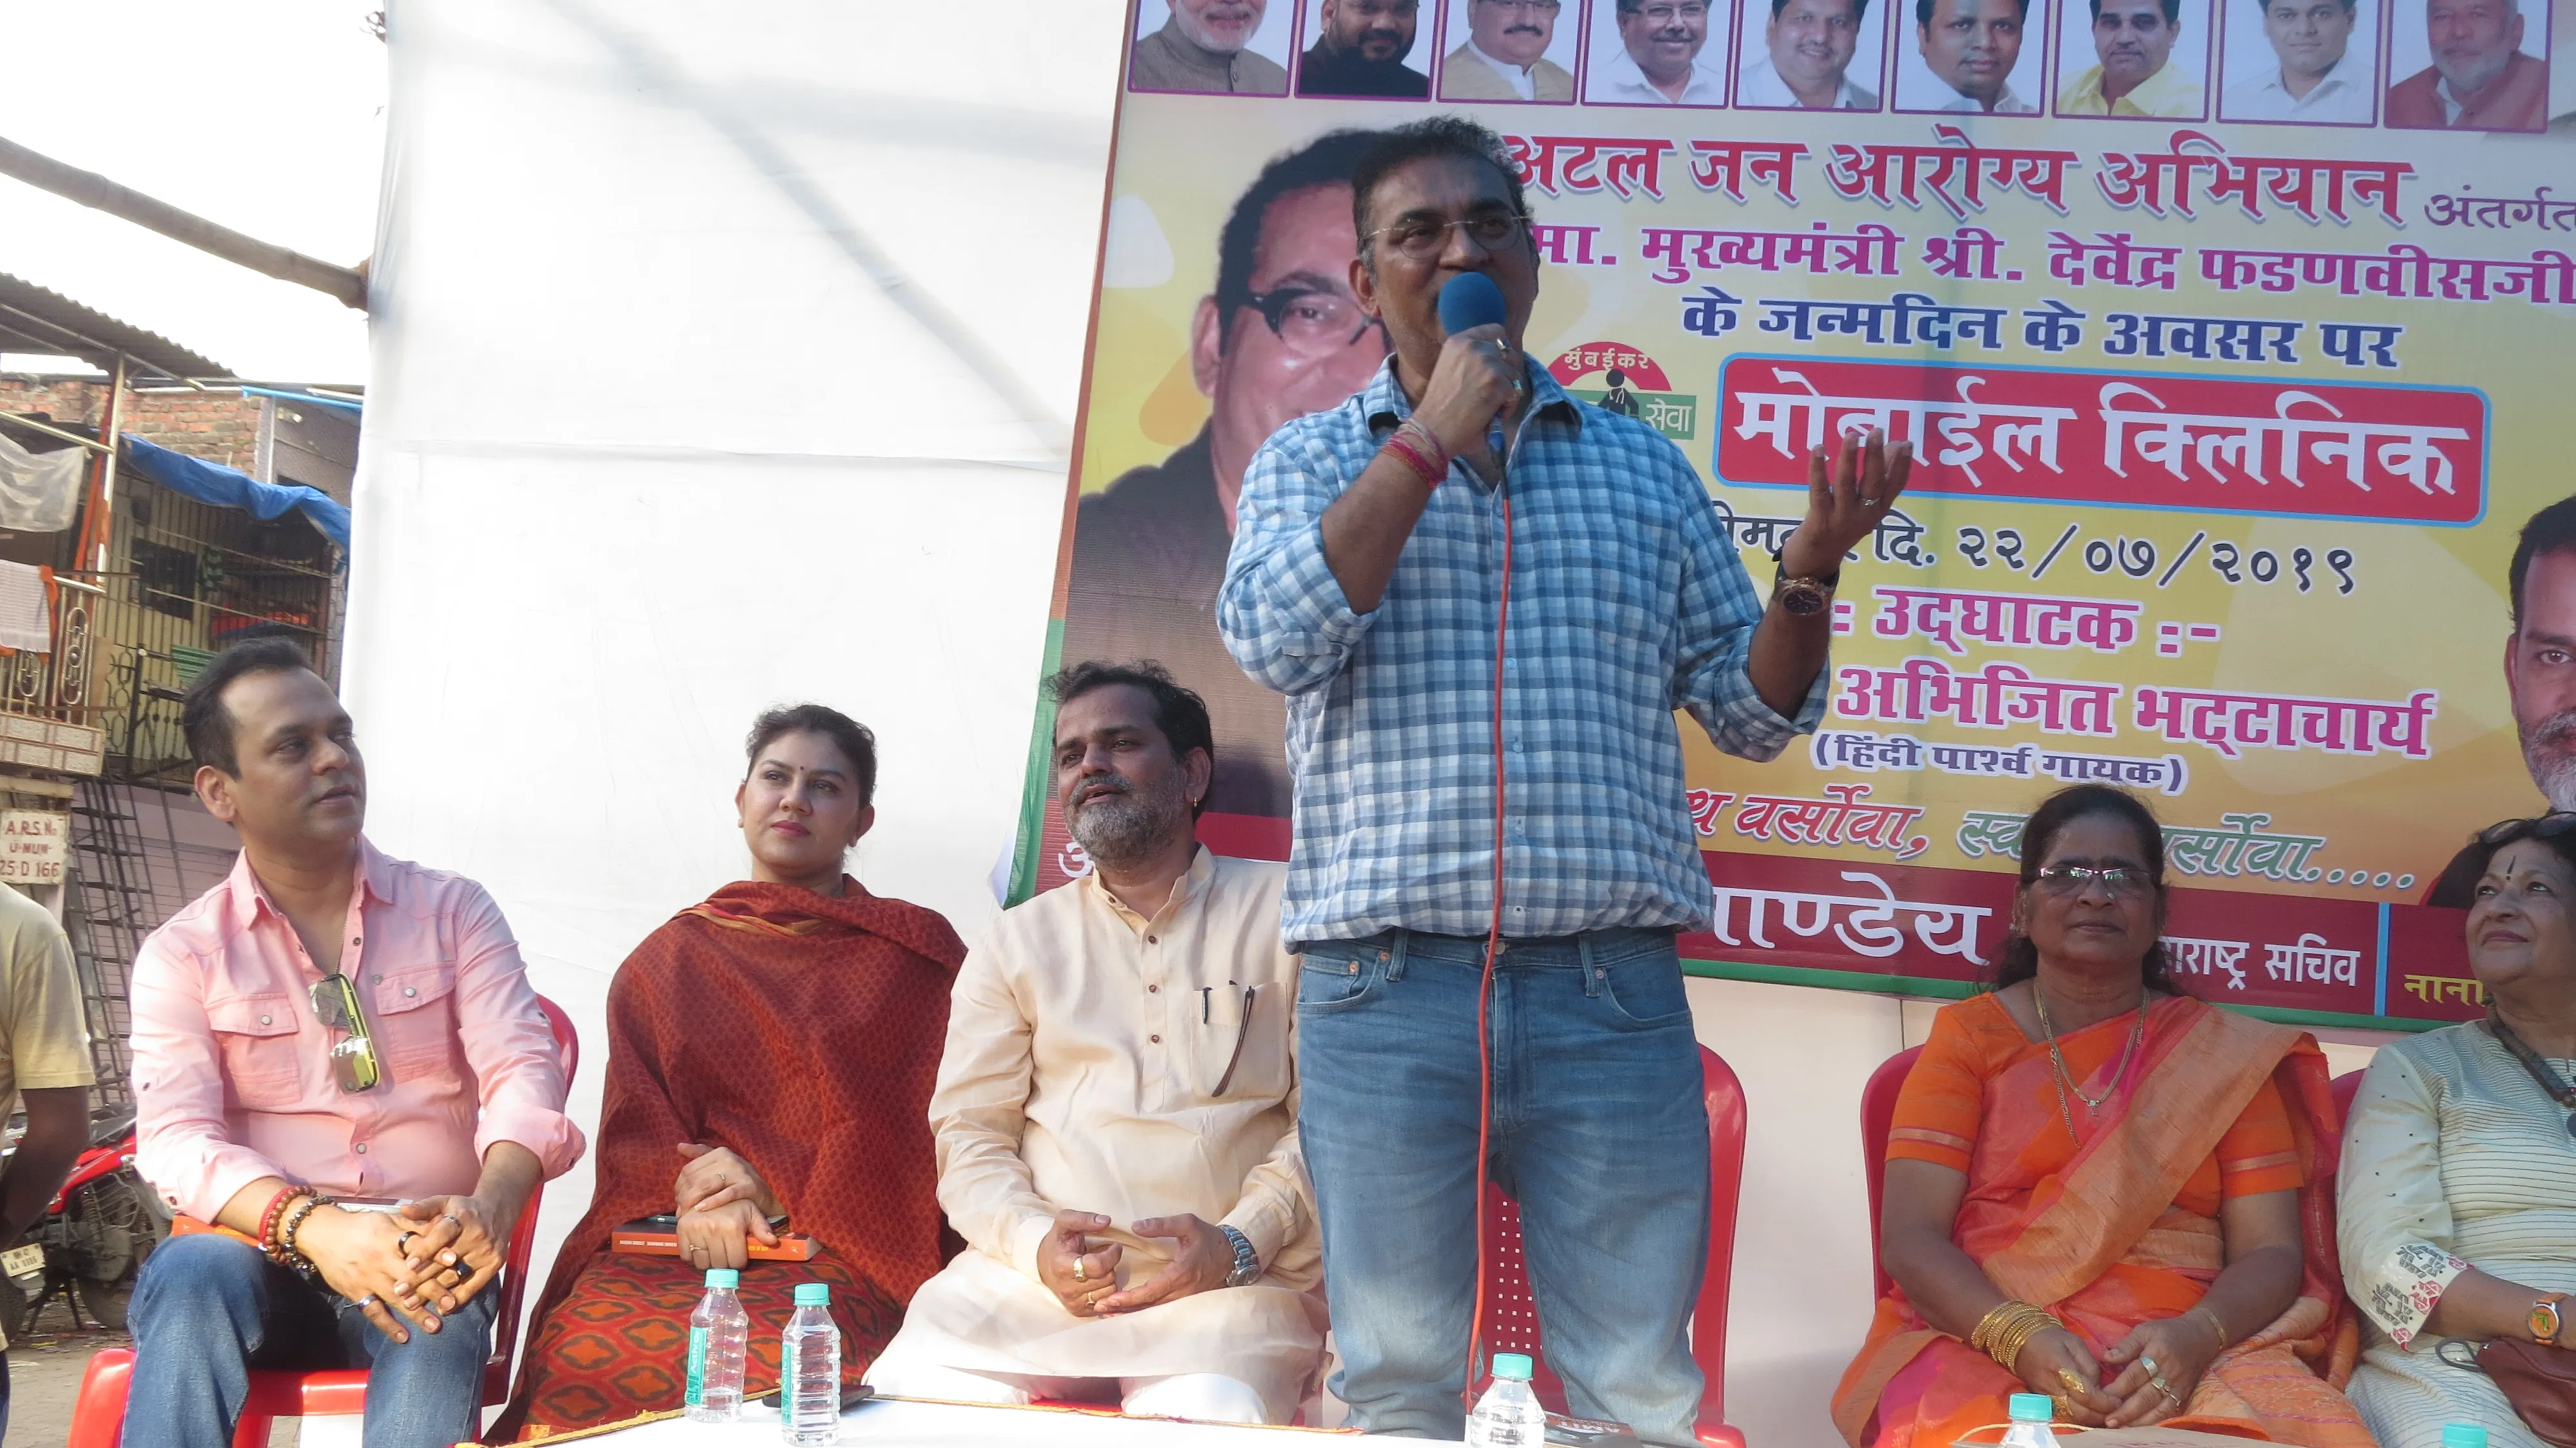 भाजपा के संजय पांडेय के अटल जन आरोग्य अभियान  का समर्थन करने पहुंचे अभिजीत भट्टाचार्य